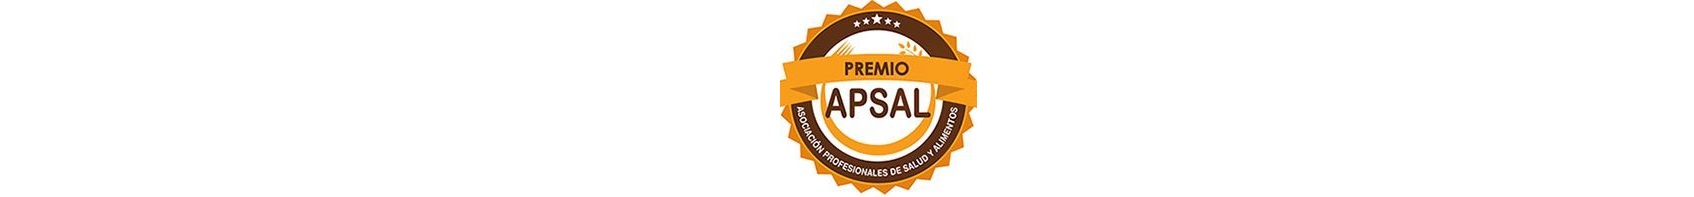 Ganamos el Premio Apsal 2021 - Categoría Especias